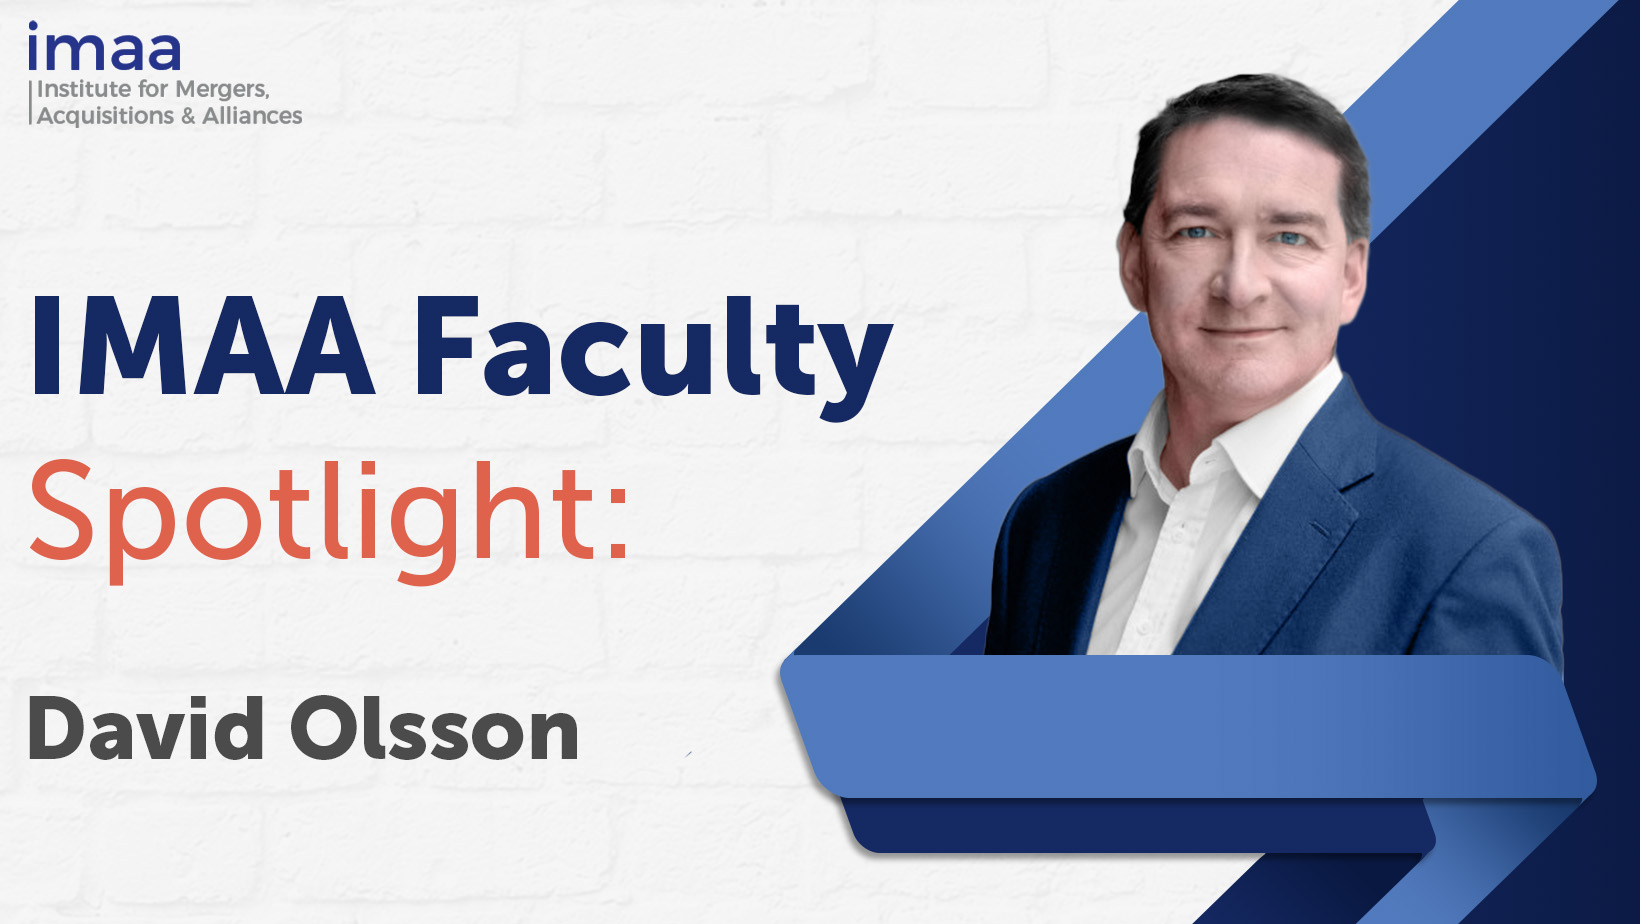 IMAA Faculty Spotlight - David Olsson